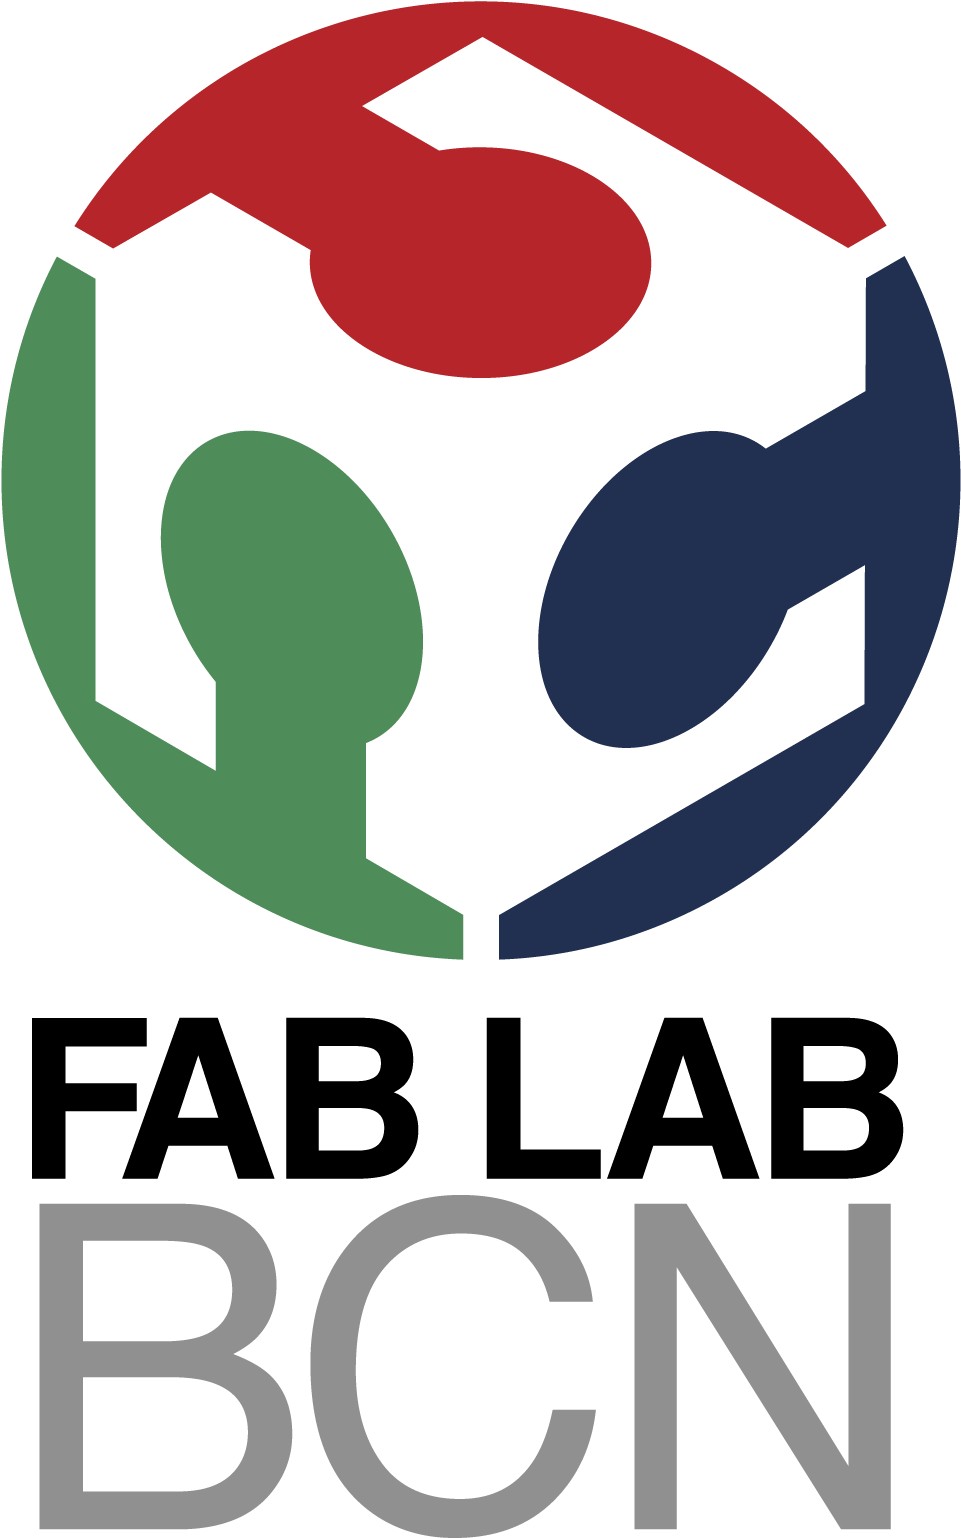 Fab-lab1 - Fab Lab Bcn Logo (1134x1701)